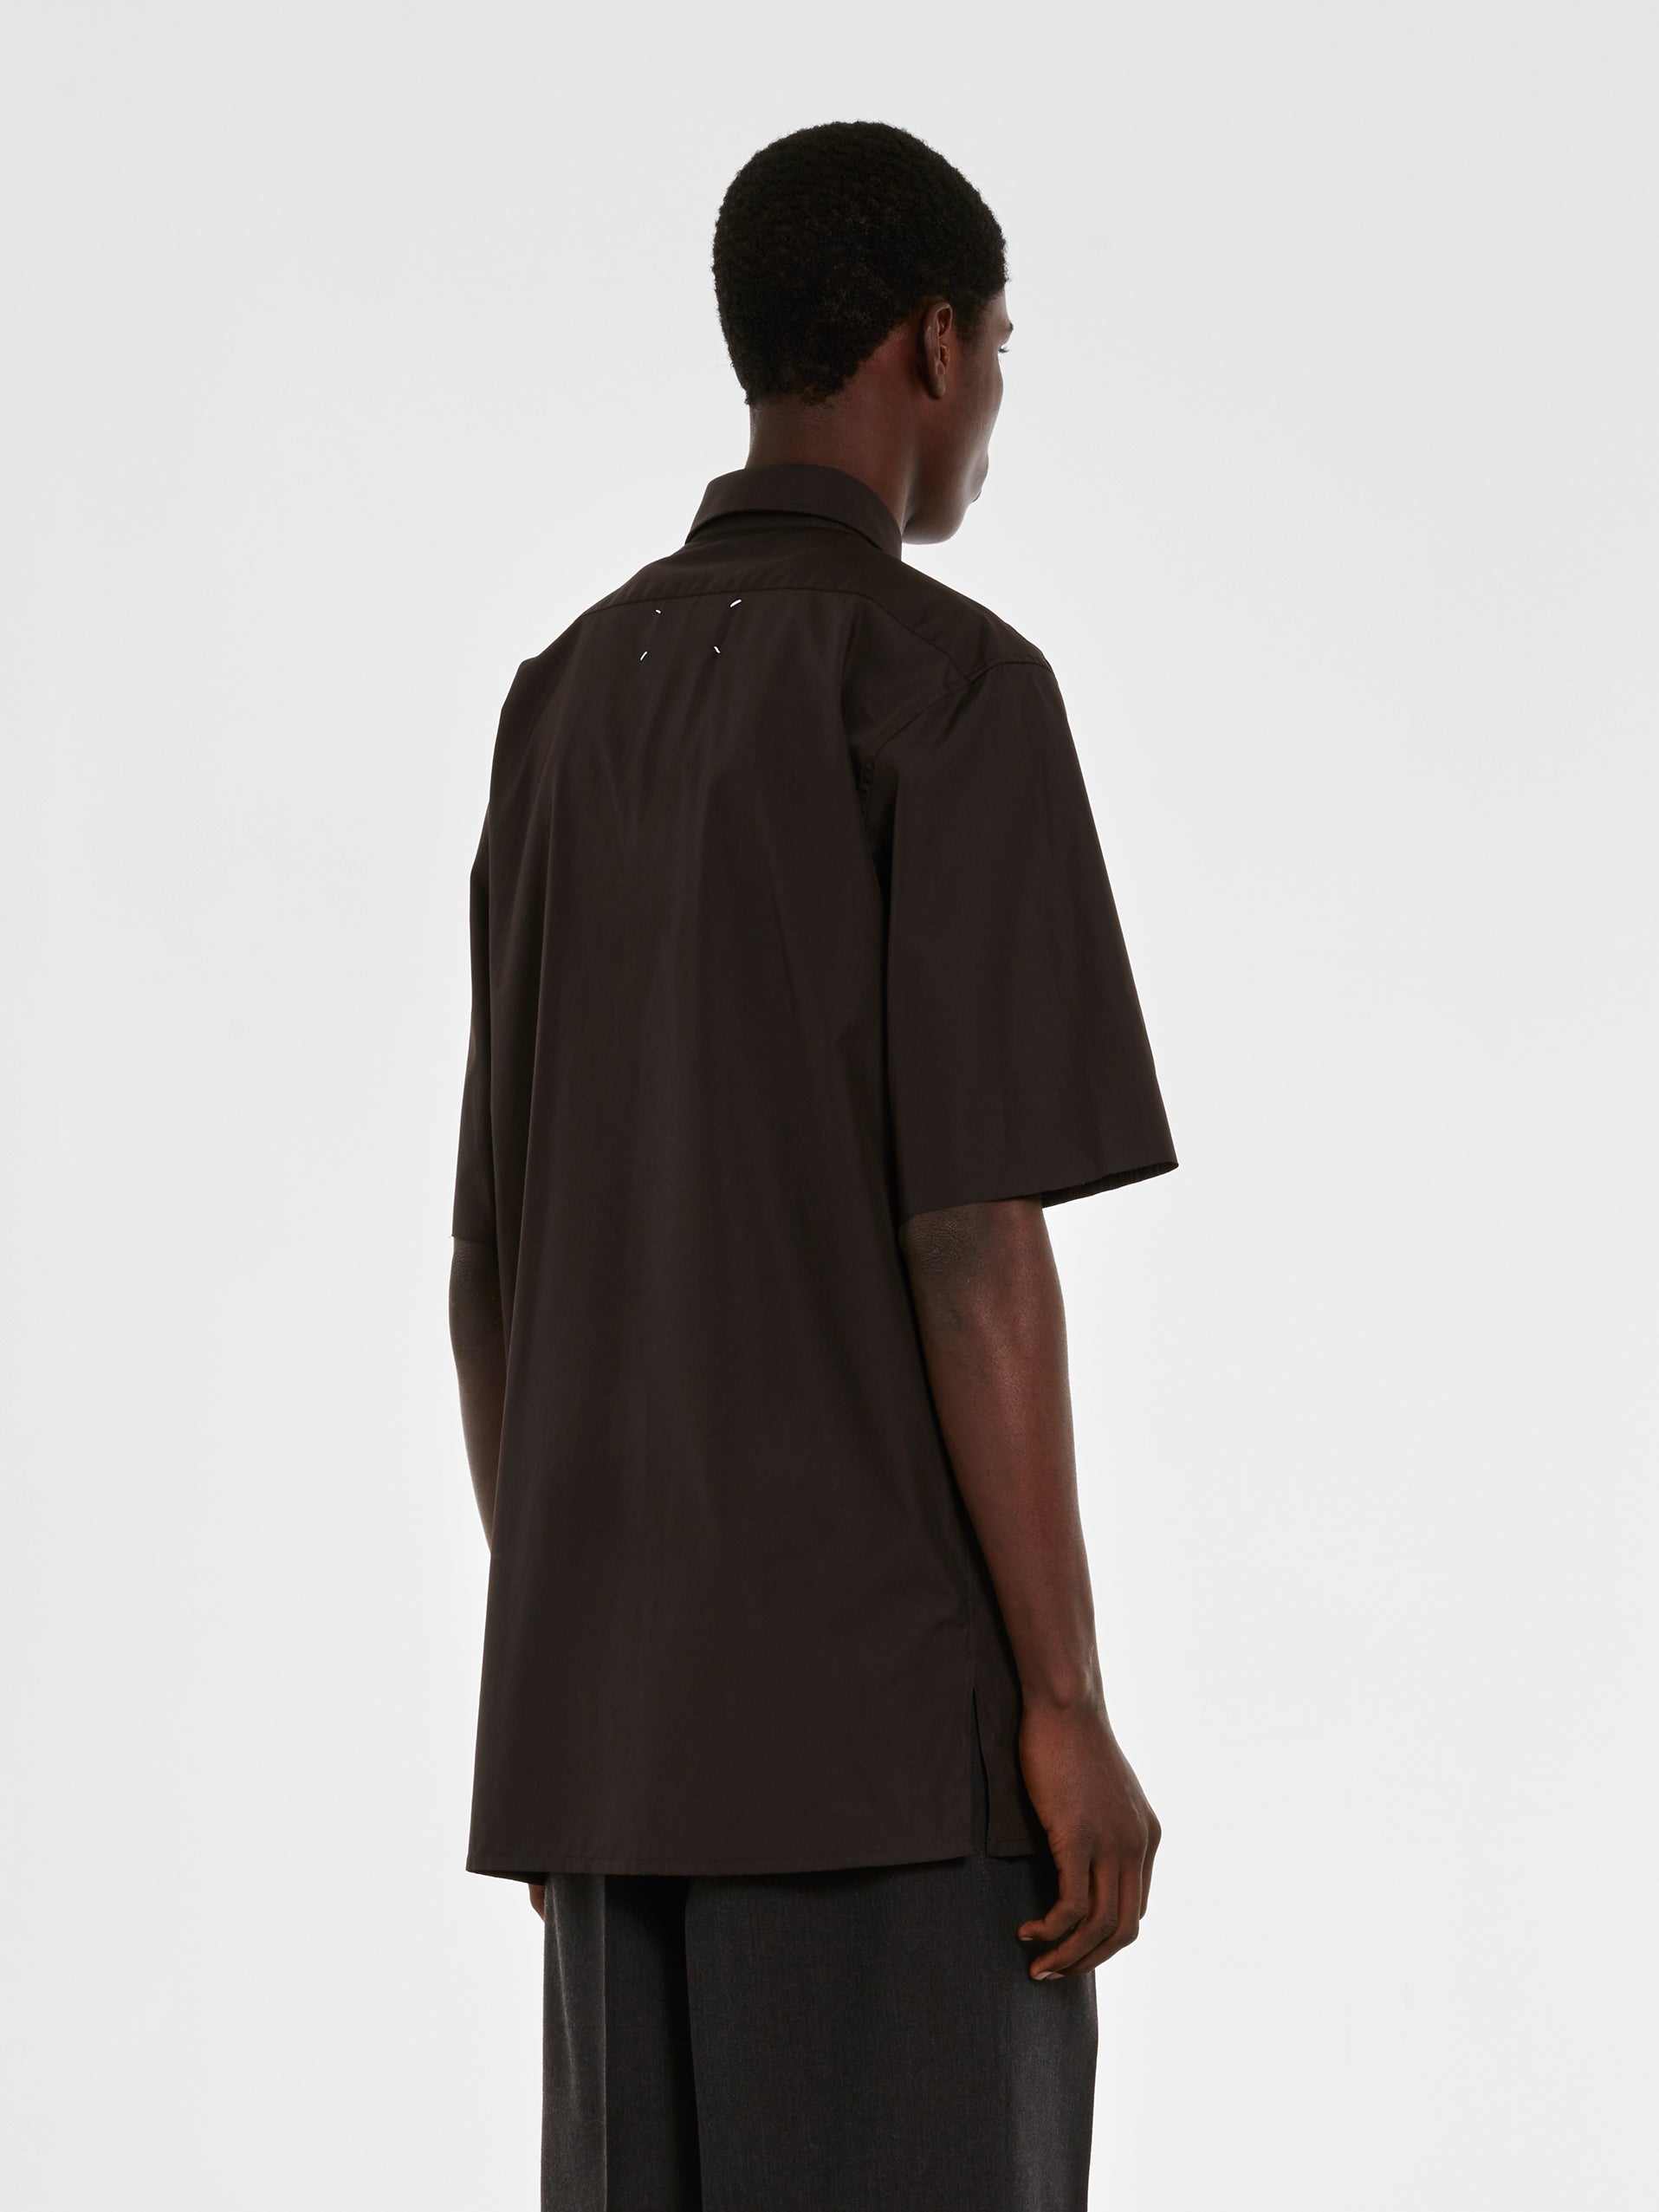 Maison Margiela - Men’s Short-Sleeved Shirt - (Black) view 3